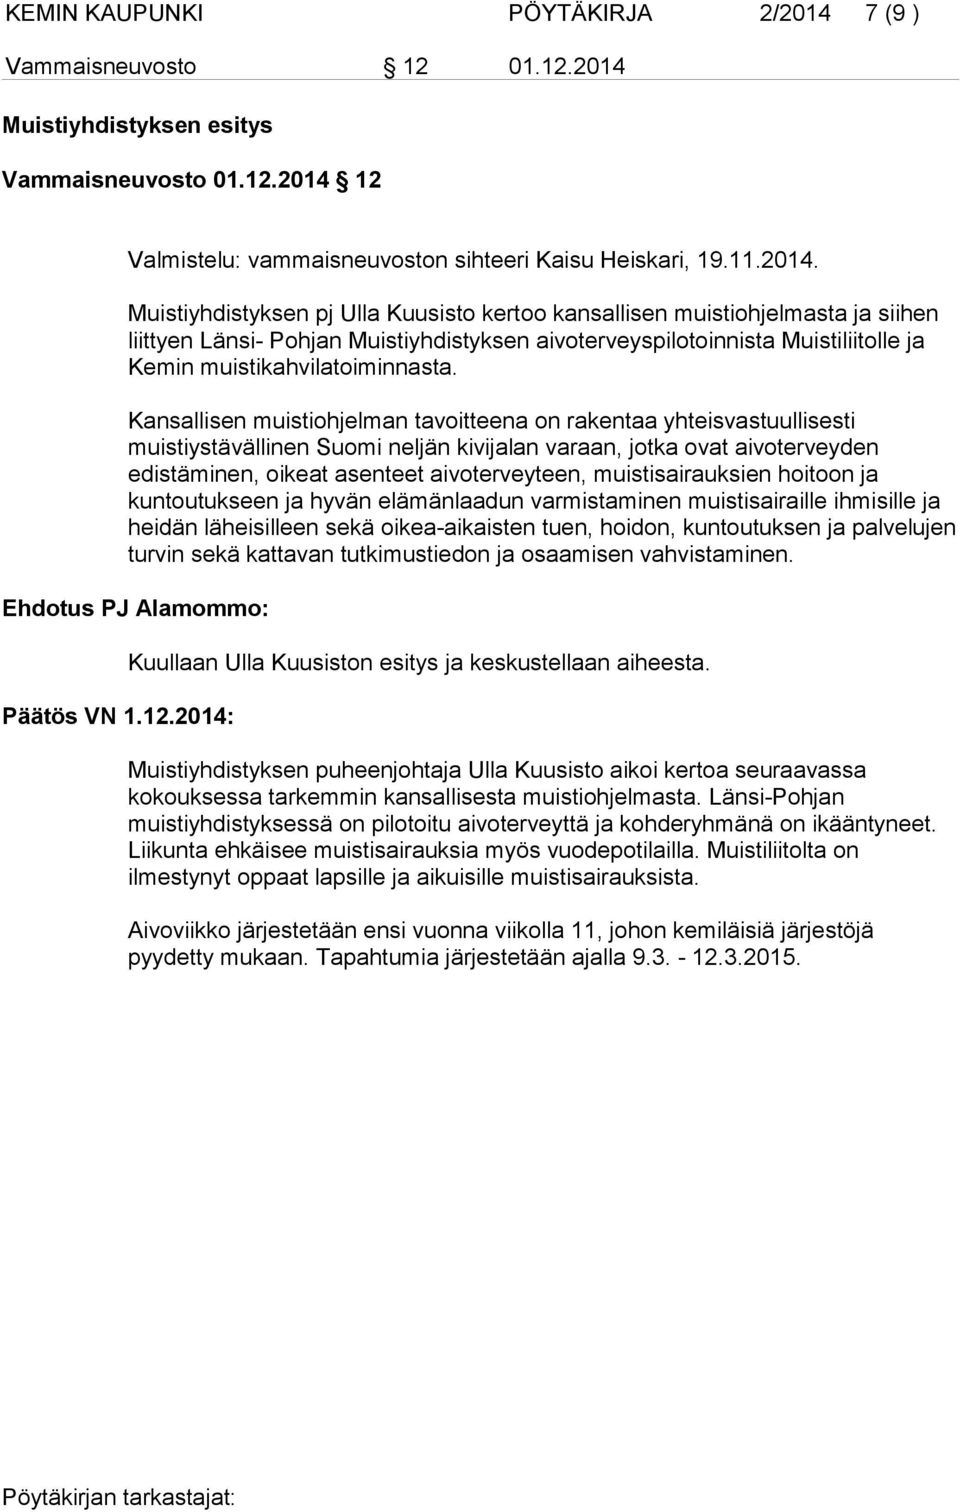 Muistiyhdistyksen esitys Vammaisneuvosto 01.12.2014 